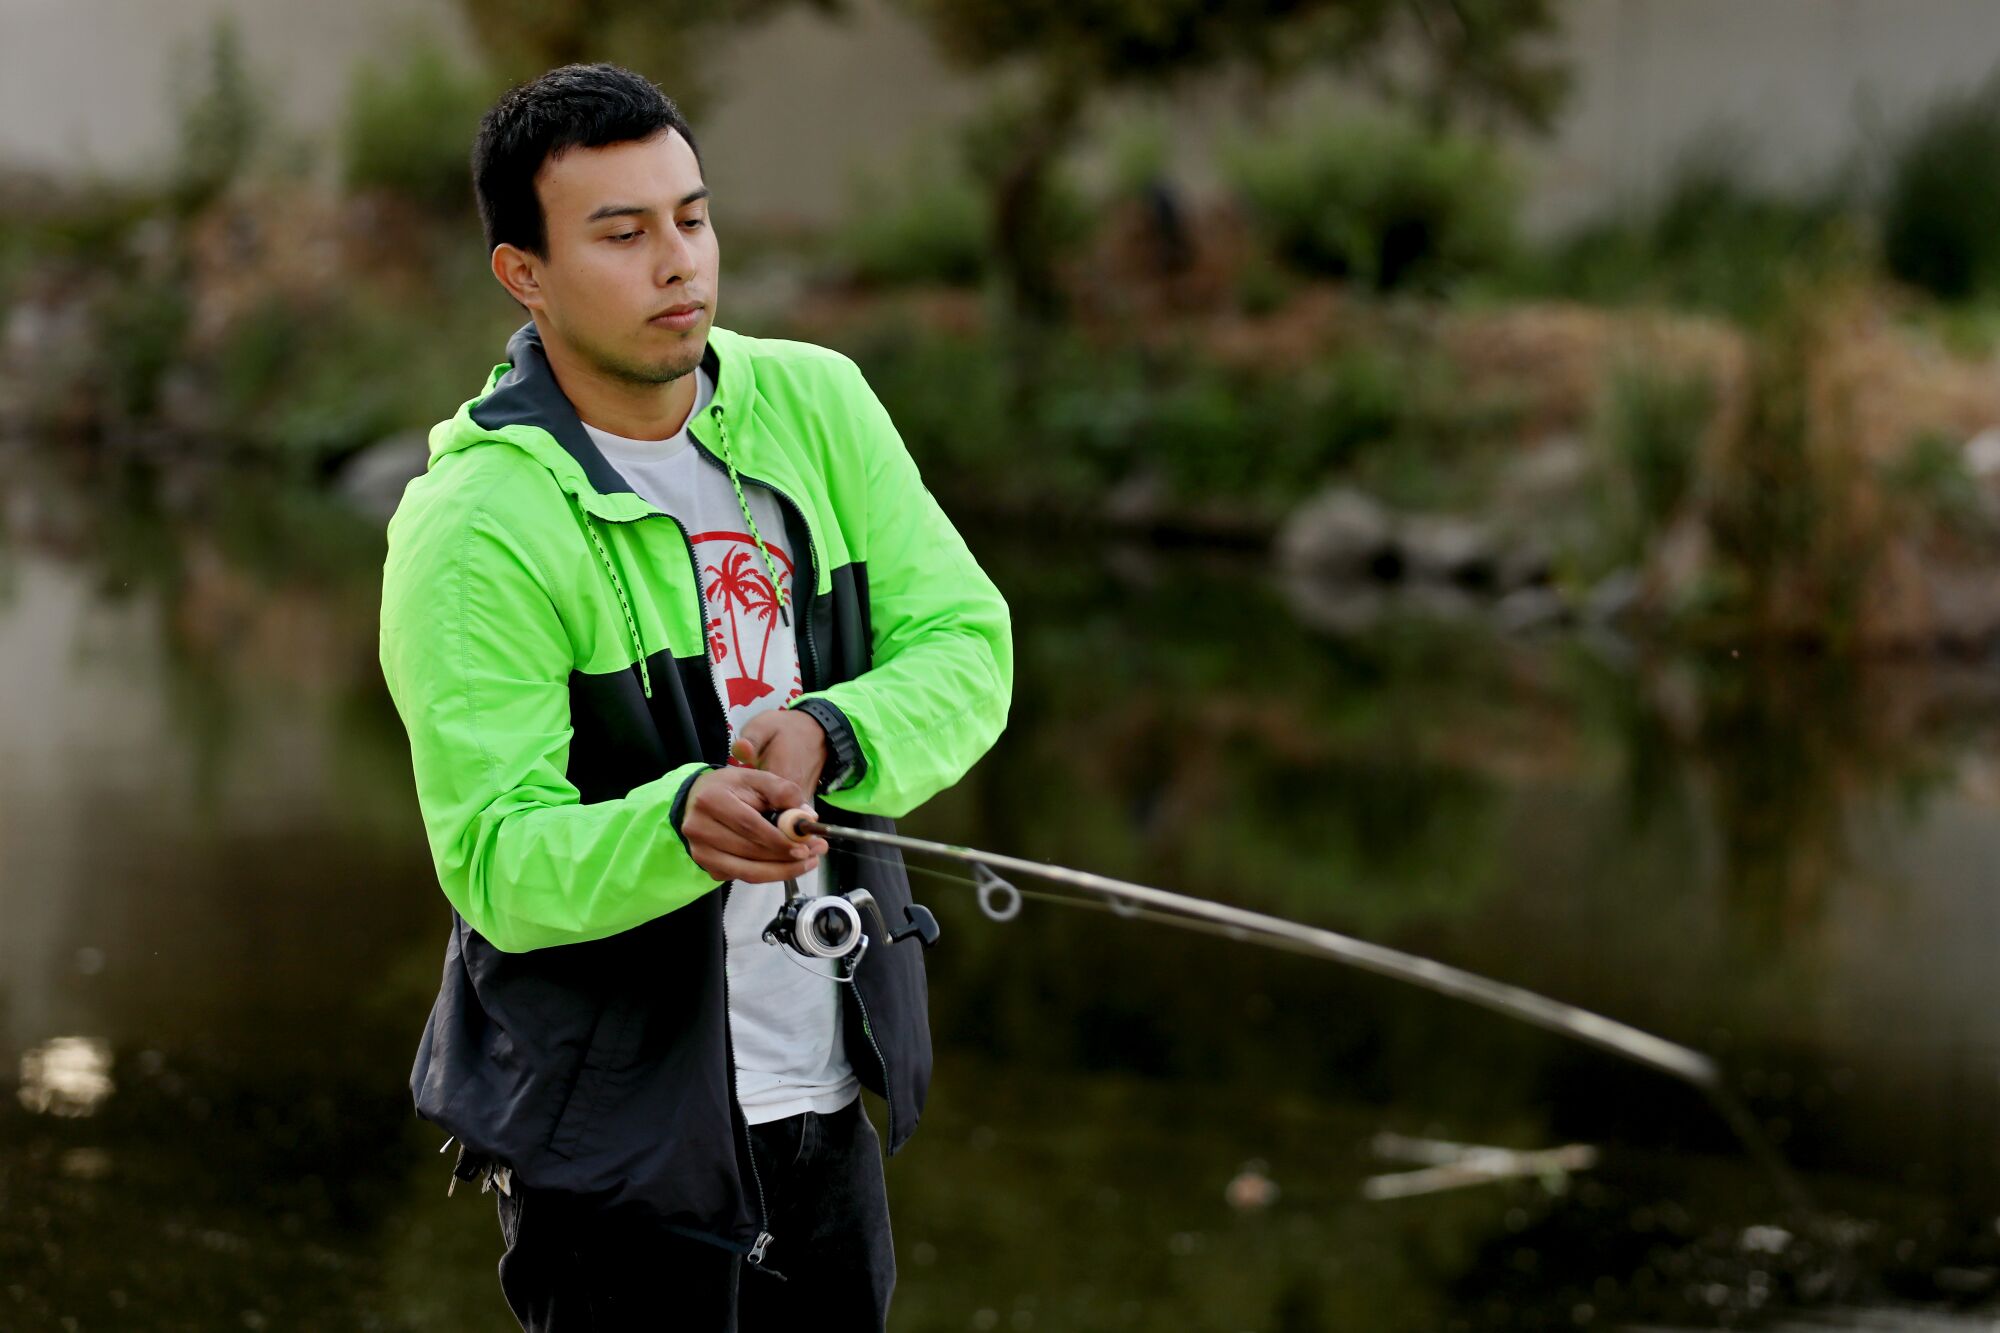 Edgar Alvarez fishes at the L.A. River.